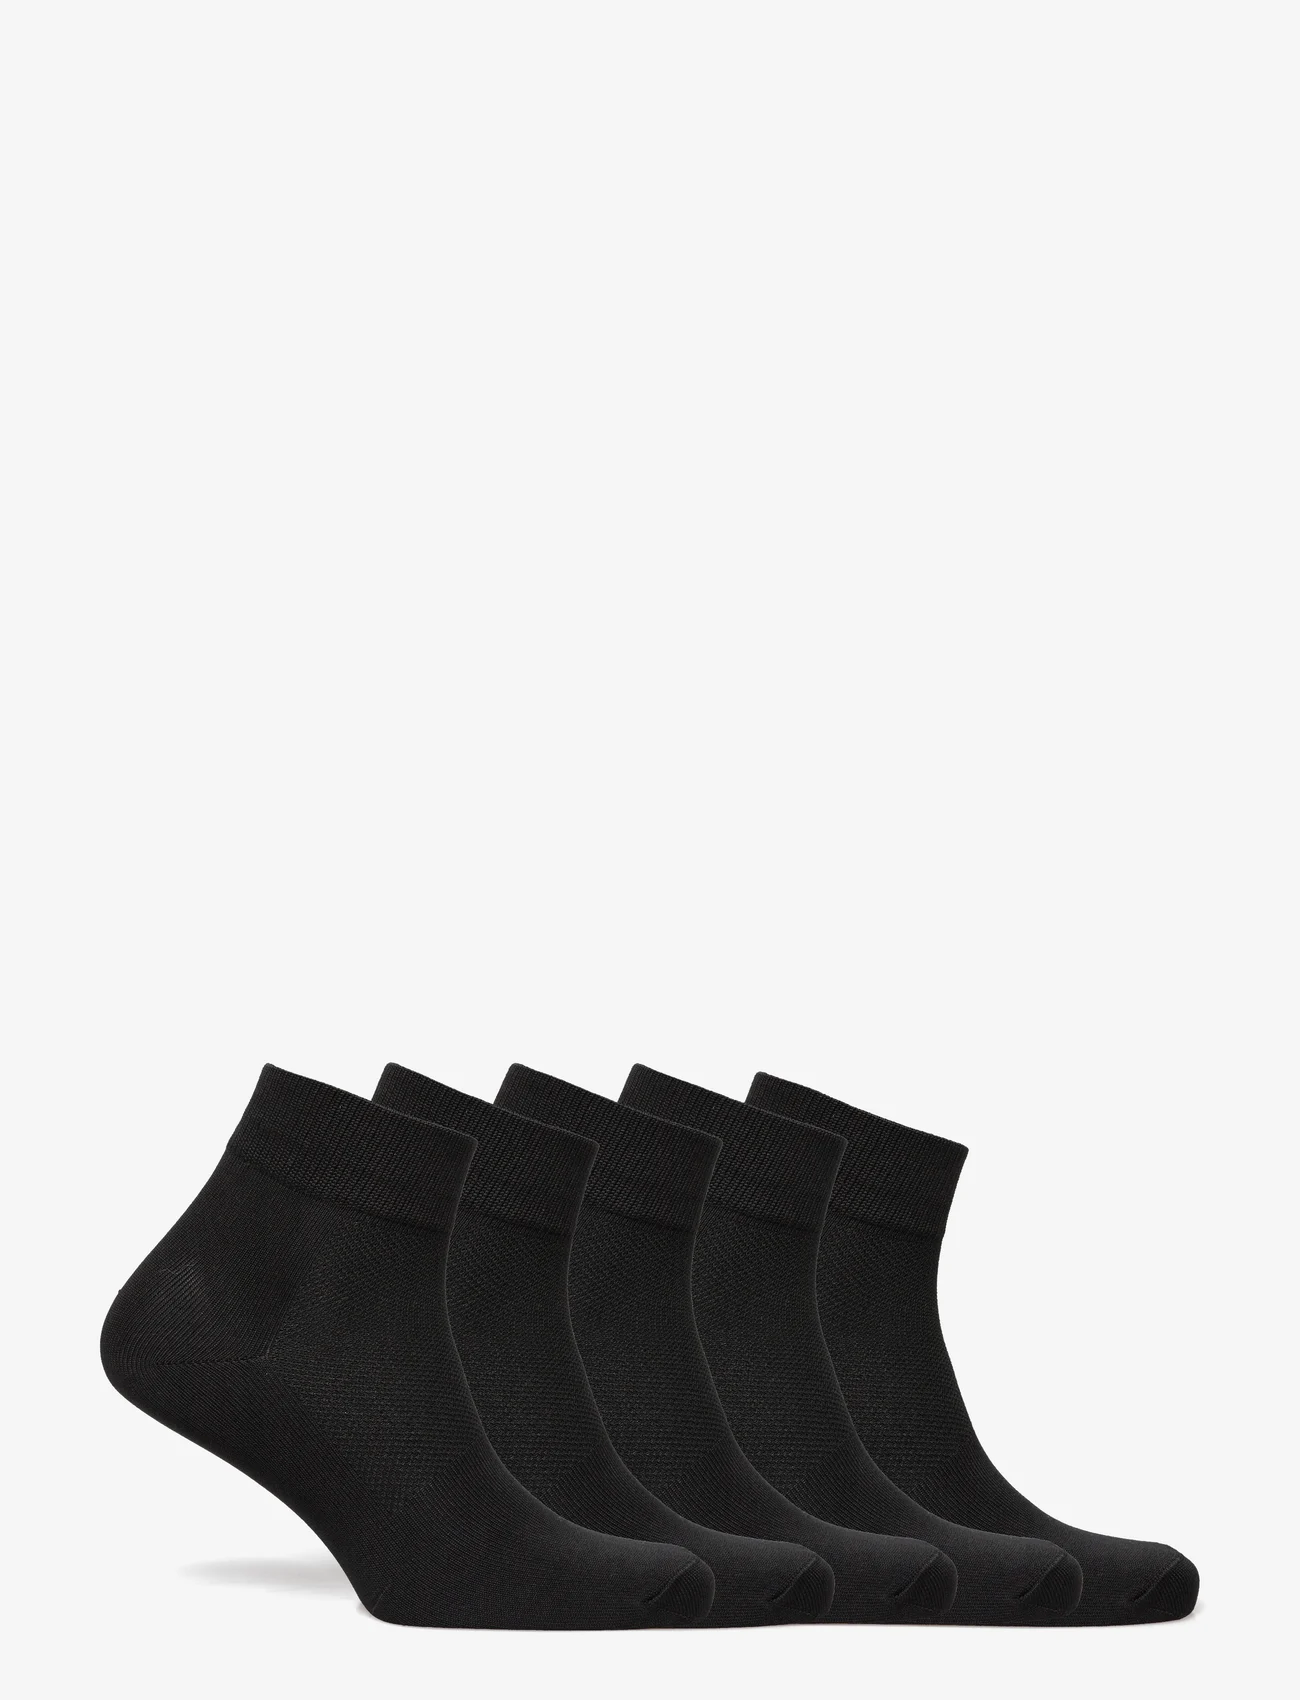 ZEBDIA - 5-PK Basic Running Socks - laagste prijzen - black - 1